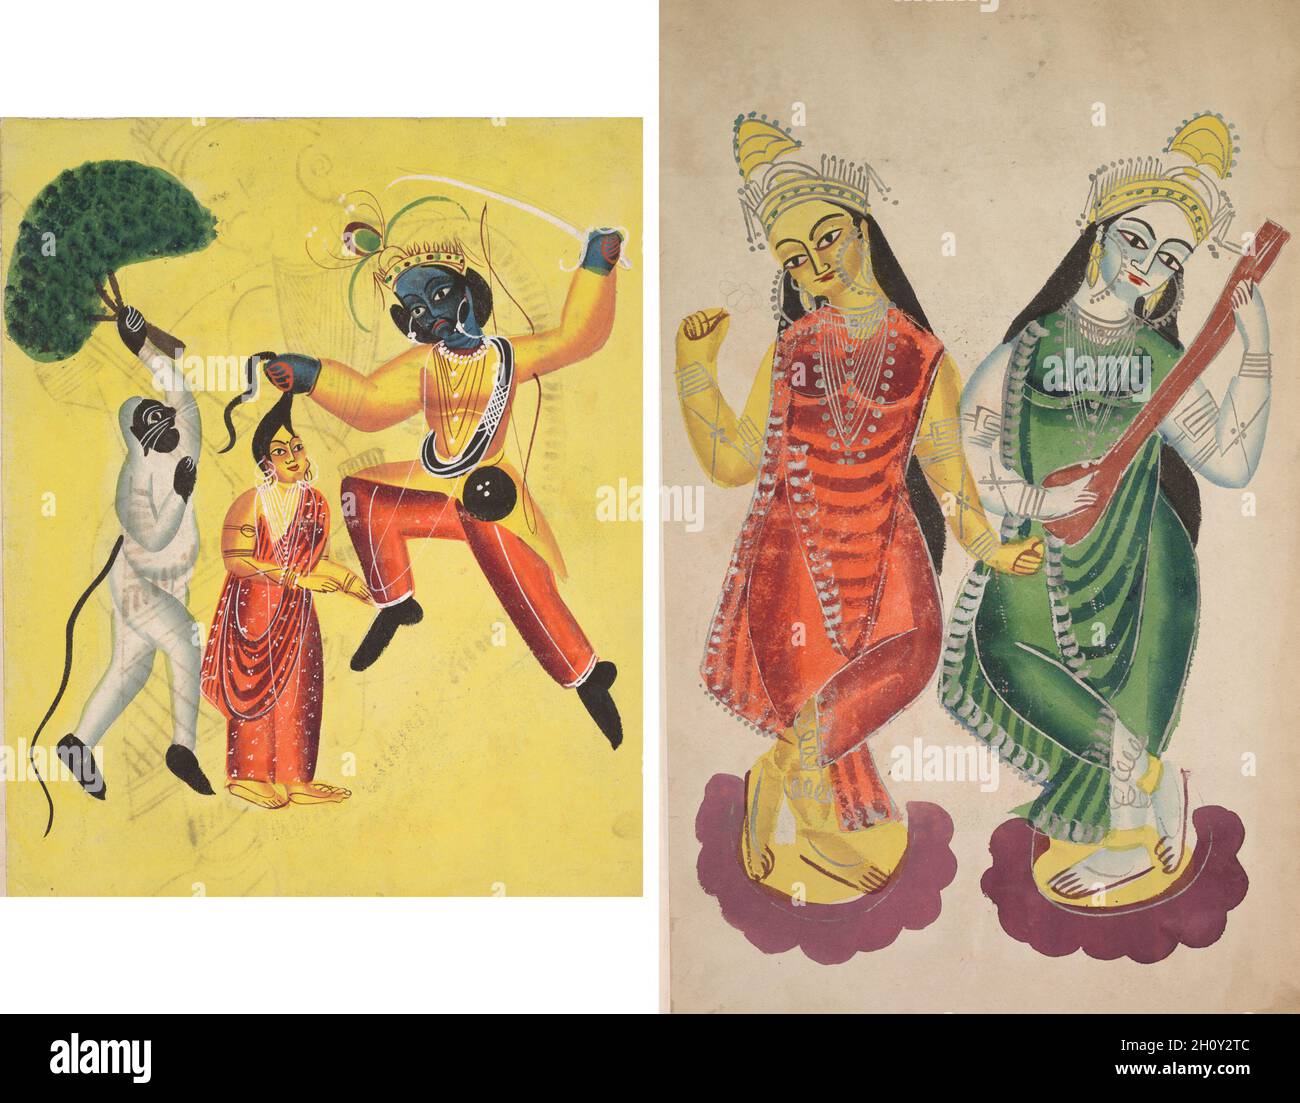 Rama und Hanuman halten einen entwurzelten Baum, rettet Sita (recto); Göttinnen Lakshmi und Sarasvati (verso), c. 1890. Ostindien, Bengalen, Kalkata, Kalighat. Aquarell, Graphit und Tinte auf Papier; sekundärer Träger: 48.6 x 29.8 cm (19 1/8 x 11 3/4 Zoll). Stockfoto